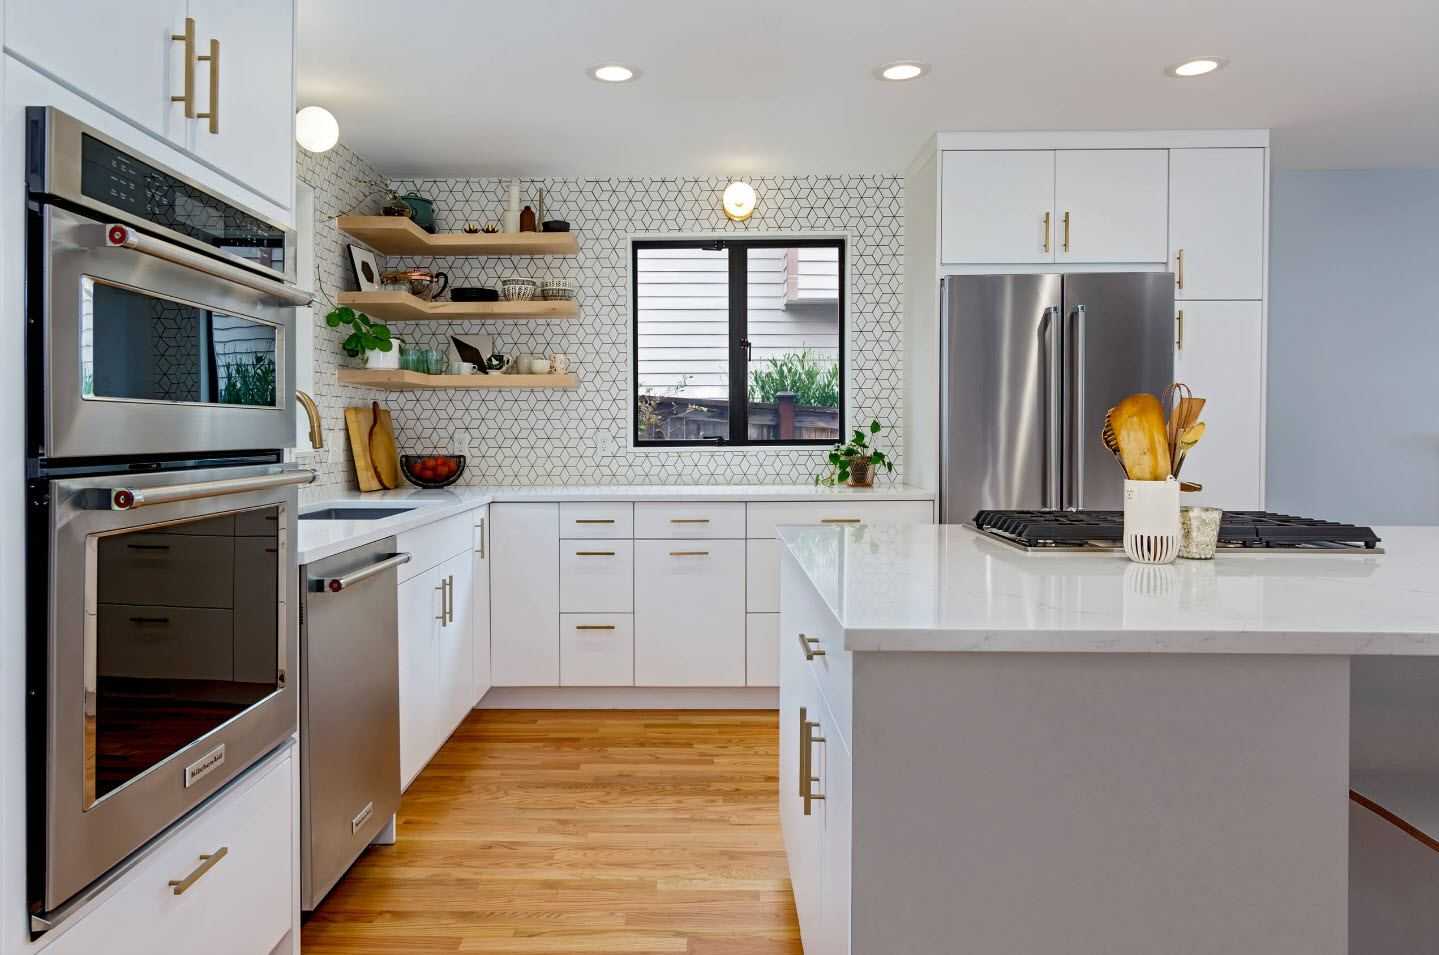 Организация пространства на кухне (44 фото): как правильно организовать место на кухне в доме и в квартире? идеи и красивые примеры организации угловых и других кухонь